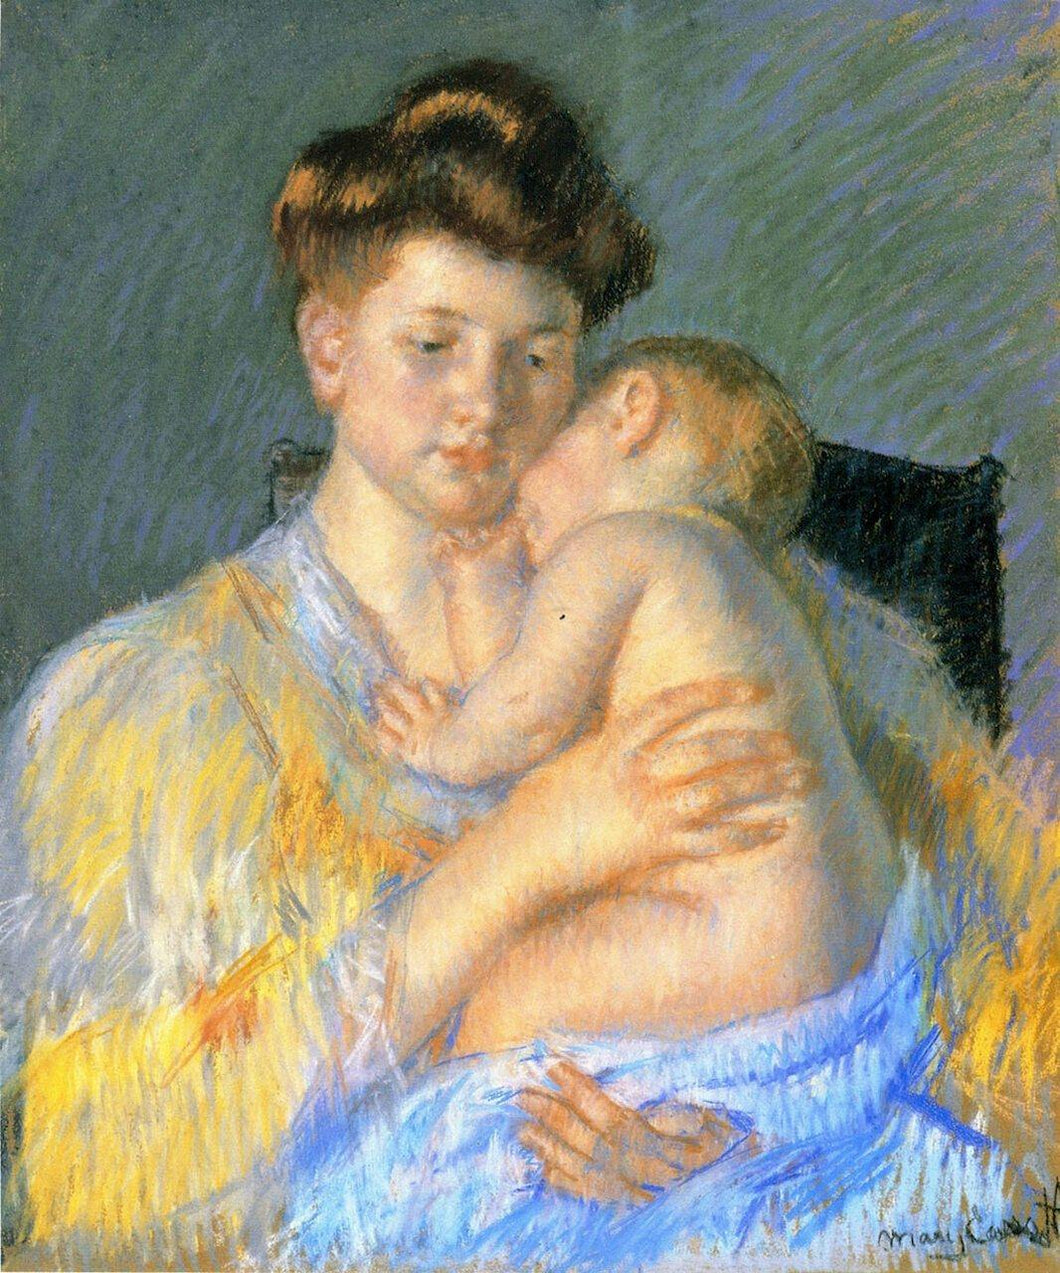 O bebê John adormecido, chupando o polegar (Mary Cassatt) - Reprodução com Qualidade Museu